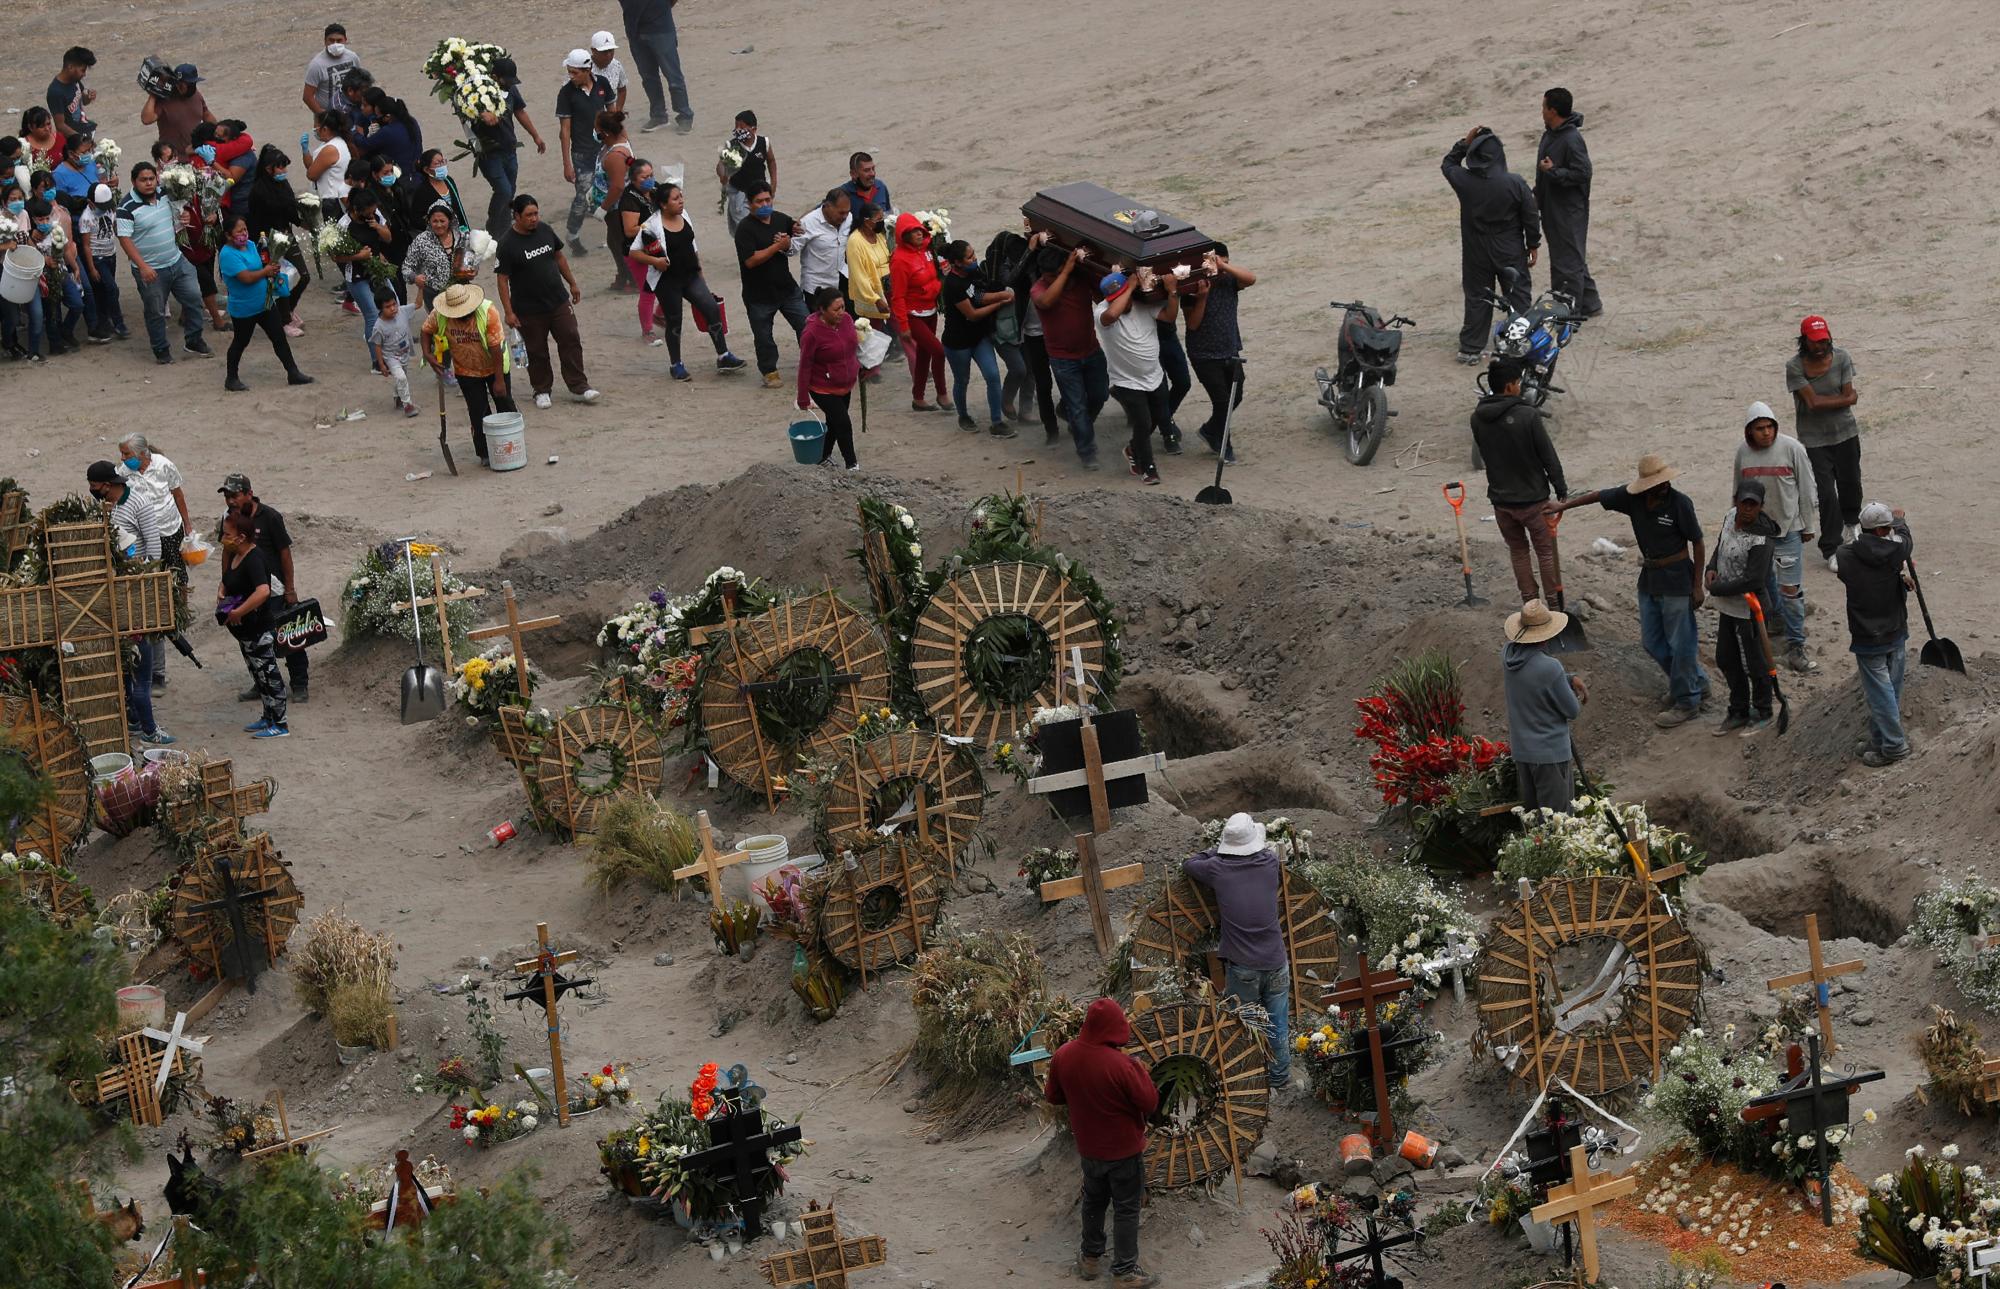 Los familiares llevan el ataúd que contiene los restos de un miembro de la familia, en el recién construido Cementerio Municipal del Valle de Chalco, construido para dar cabida al aumento de las muertes en medio de la nueva pandemia de coronavirus, en el Valle de Chalco, en las afueras de la Ciudad de México, el jueves 21 de mayo. 2020. (Foto AP / Marco Ugarte)